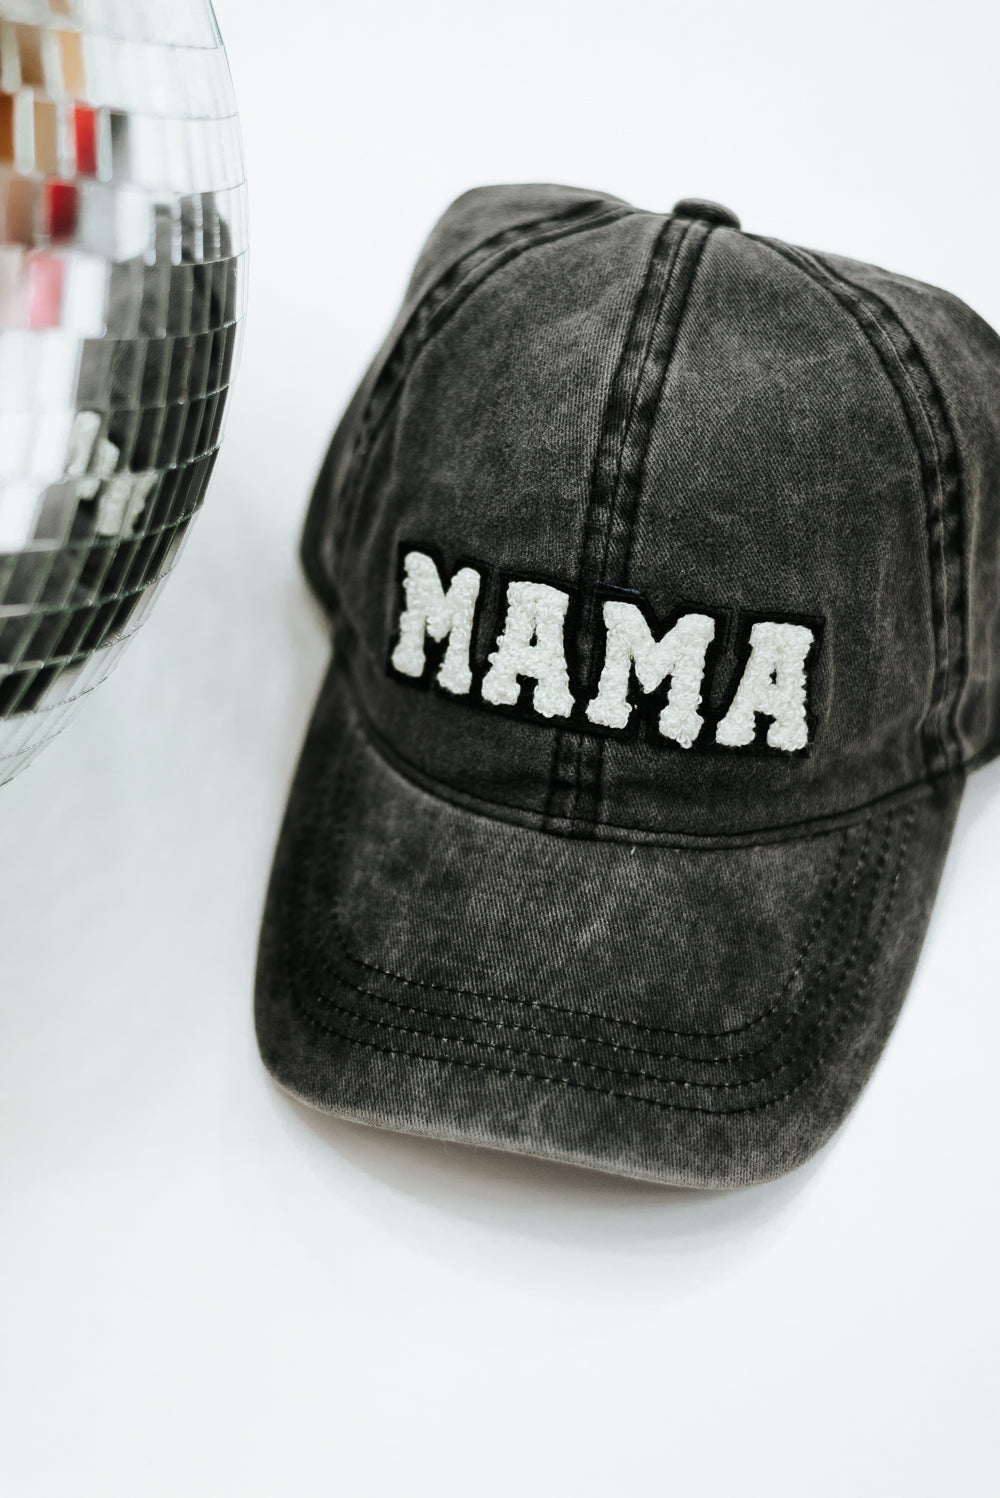 Mama Ball Cap, Black